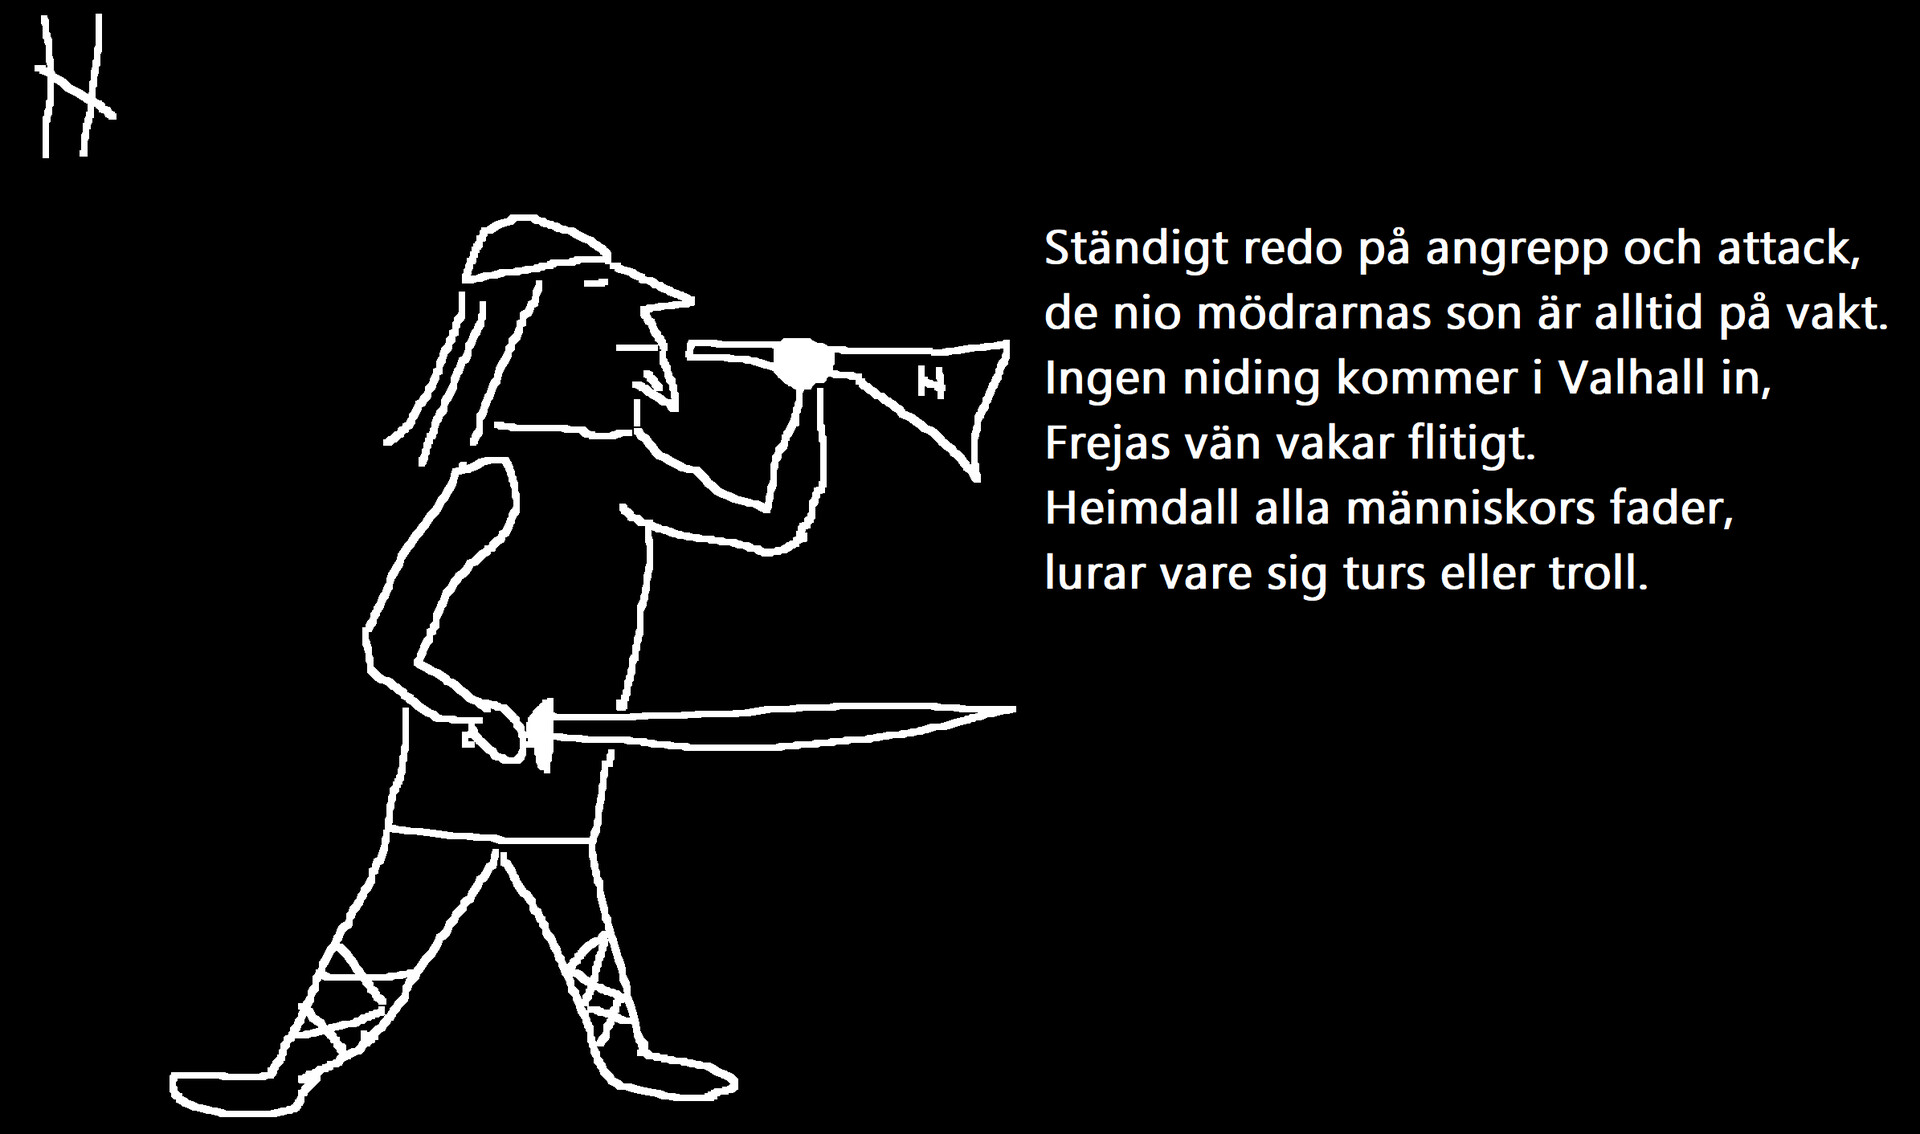 ArtStation - Dikt om Heimdall / Poem about Heimdall